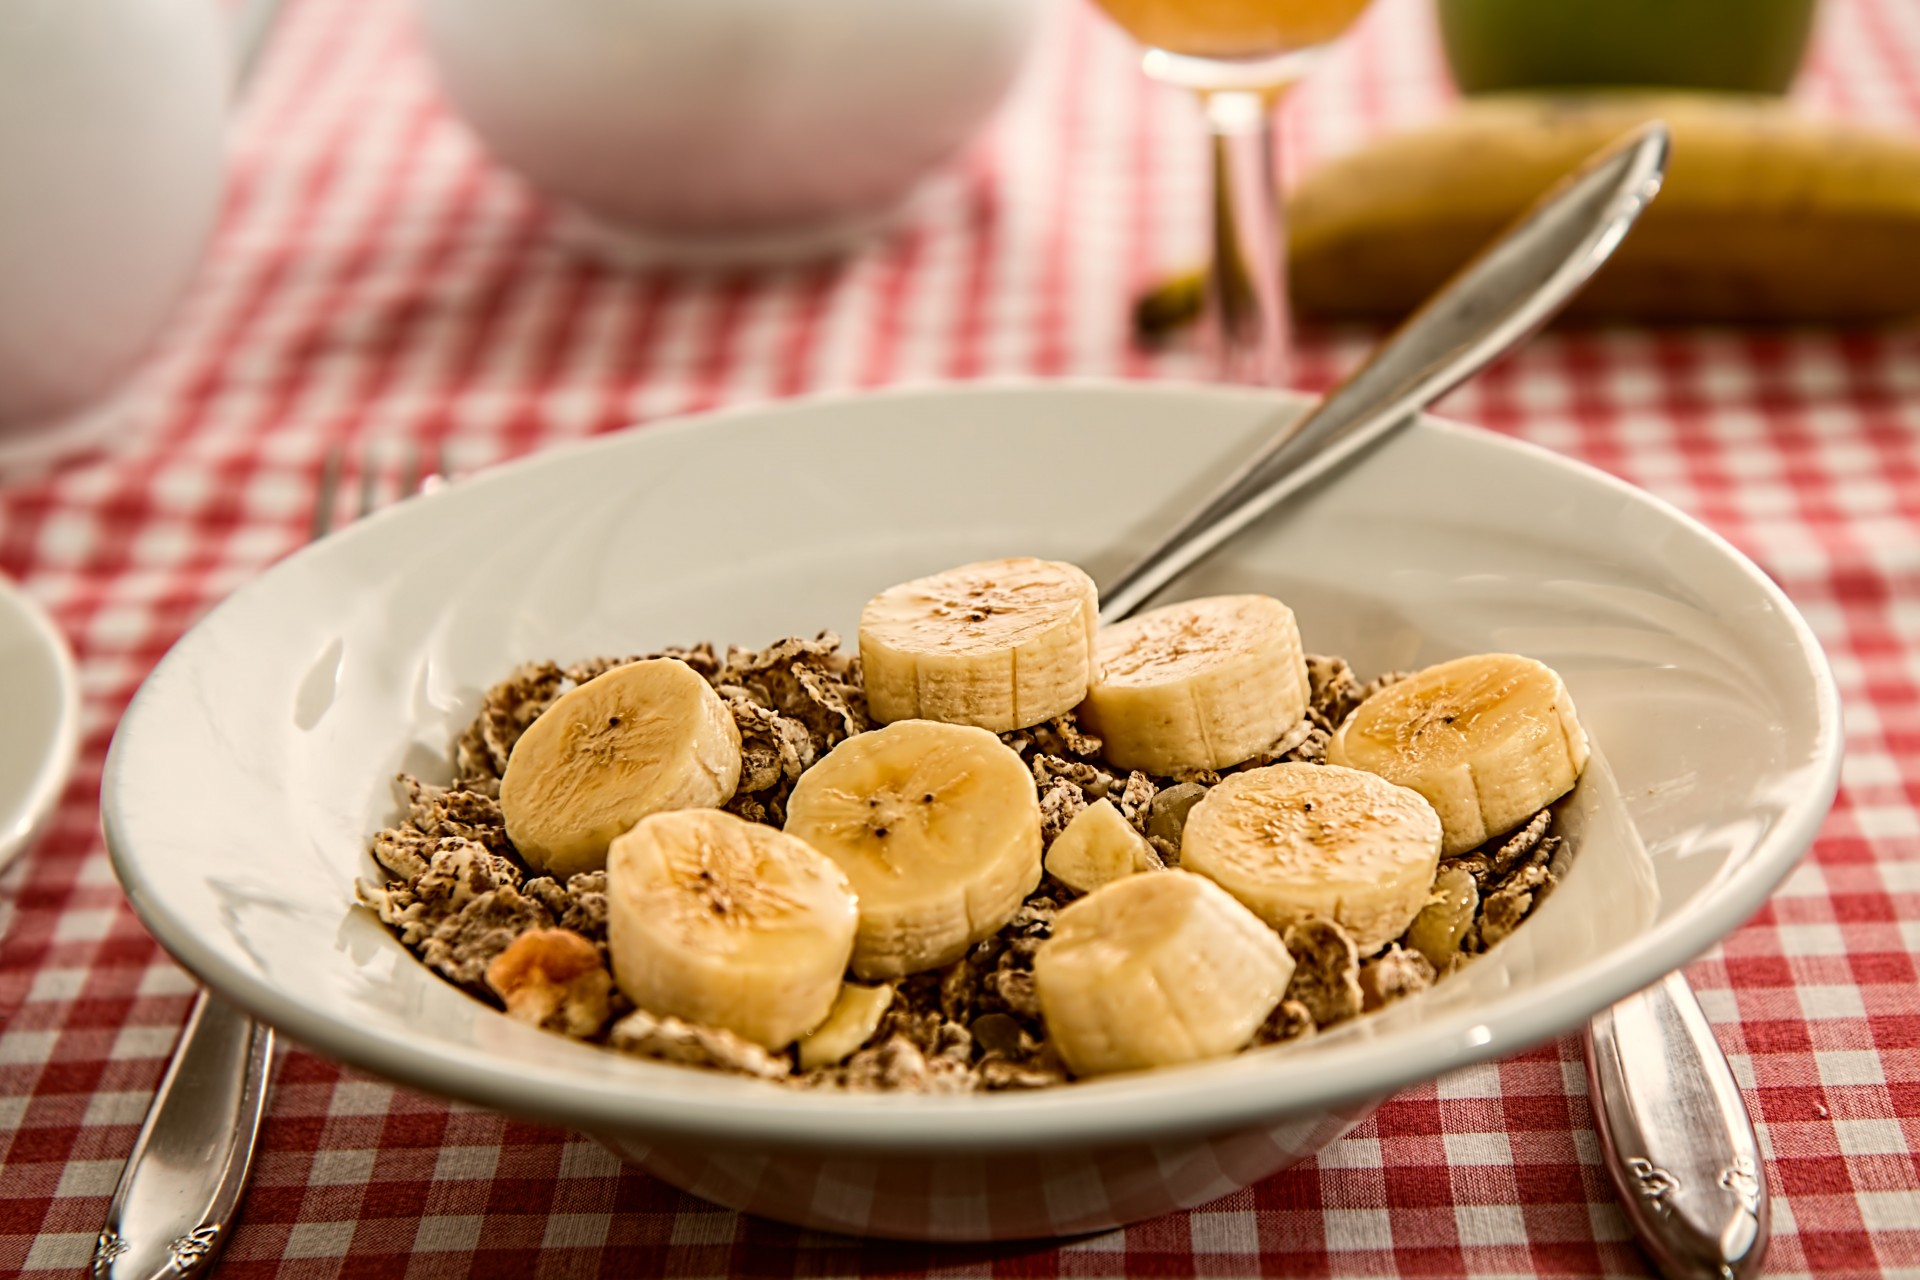 Οι 15 τροφές που πρέπει να προσθέσεις στο πρωινό σου